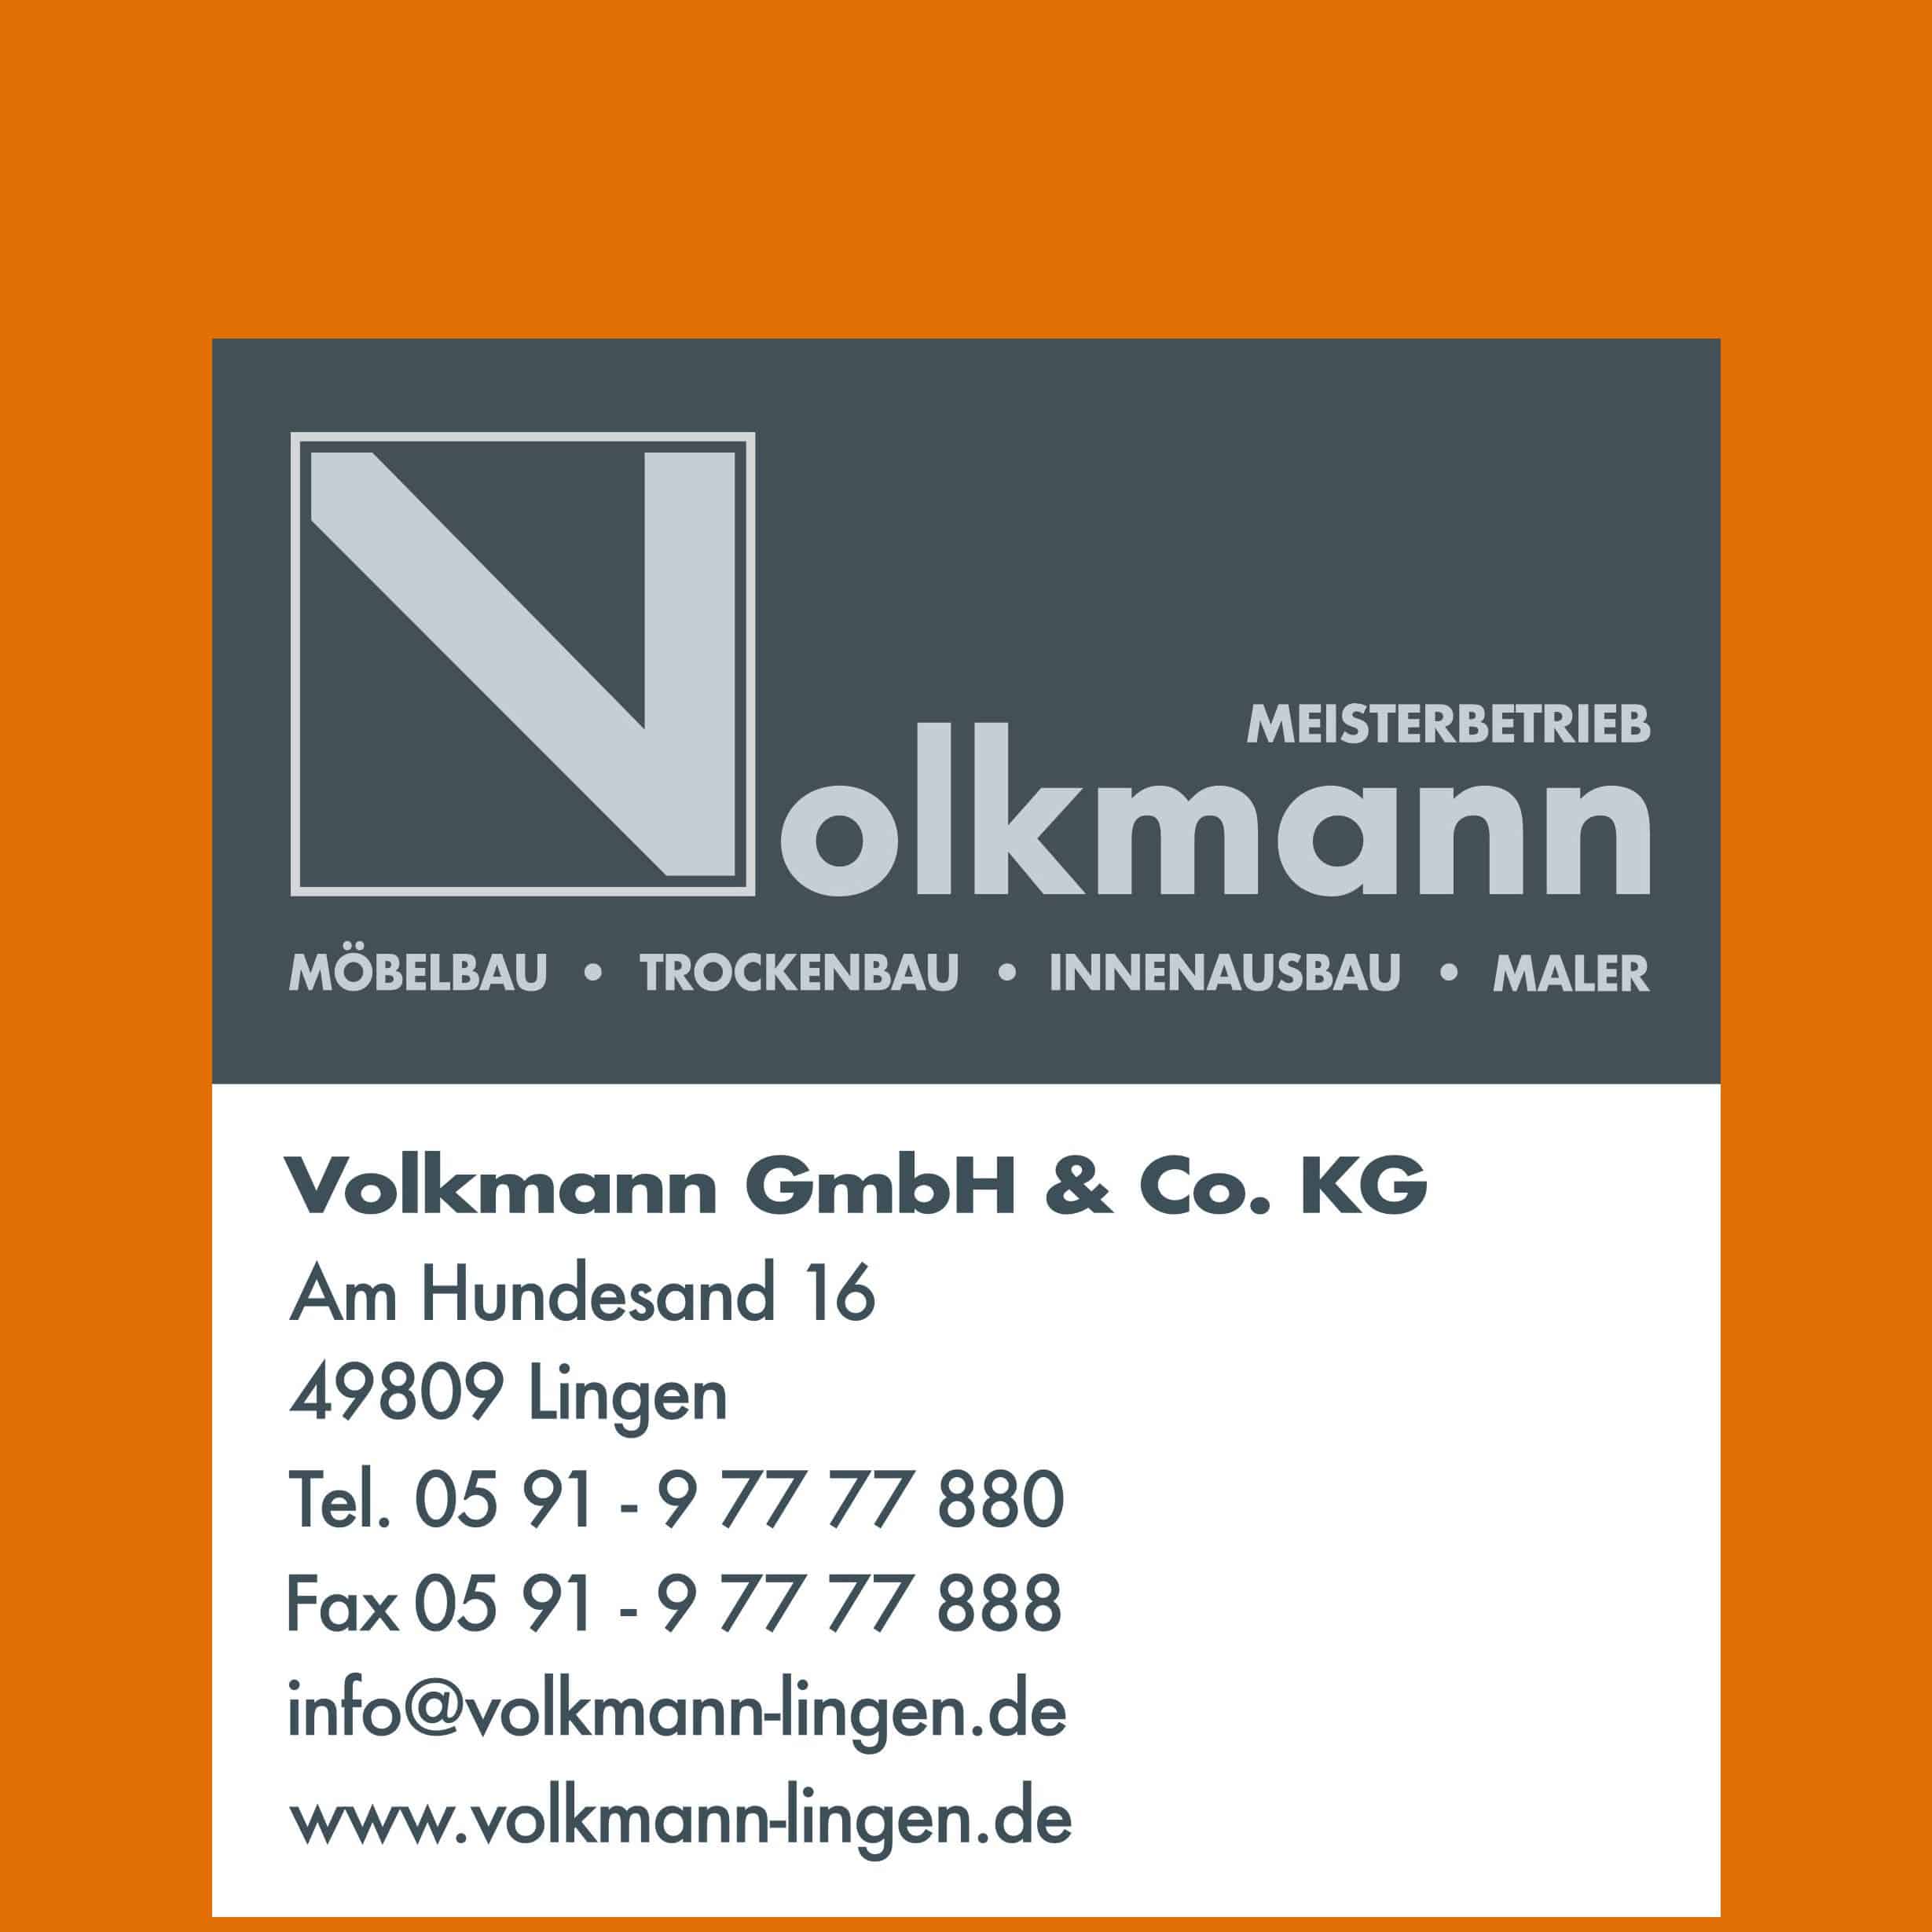 Volkmann GmbH & Co. KG